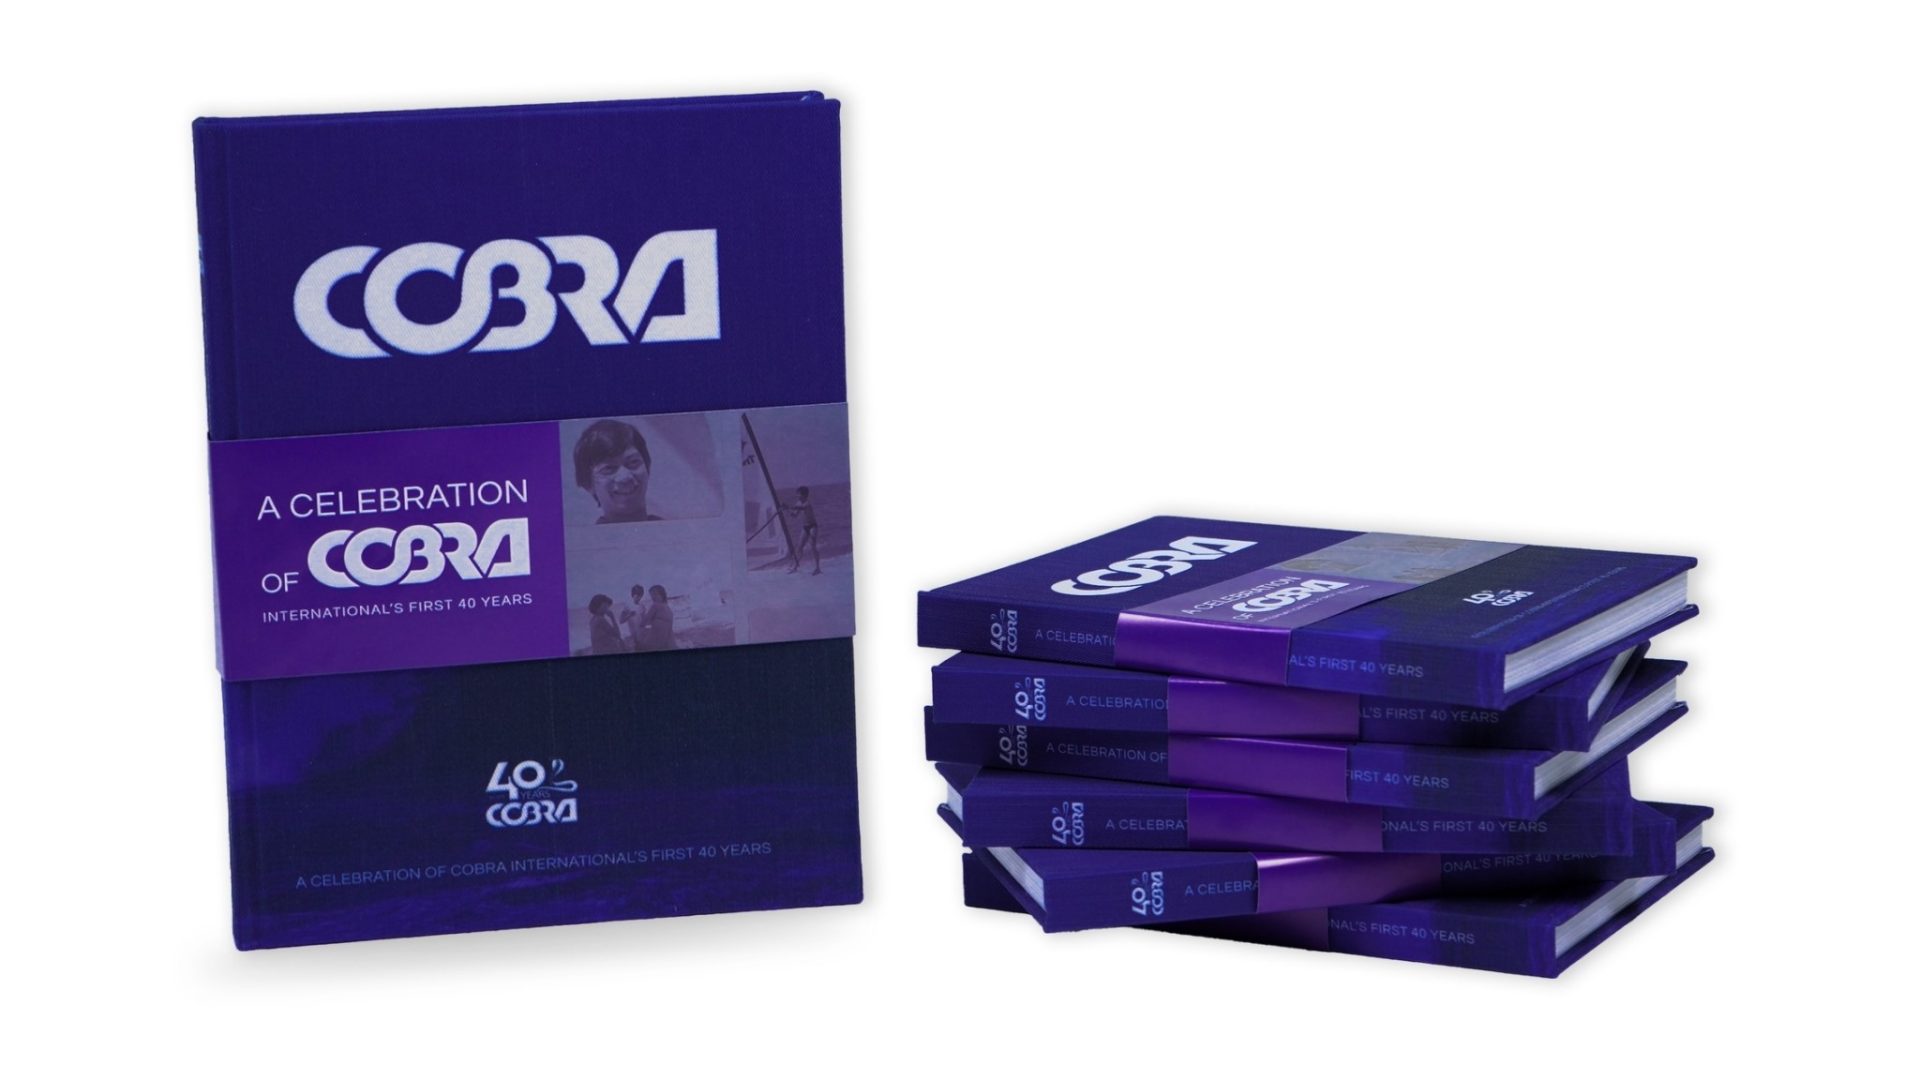 Cobra 40th anniversary book